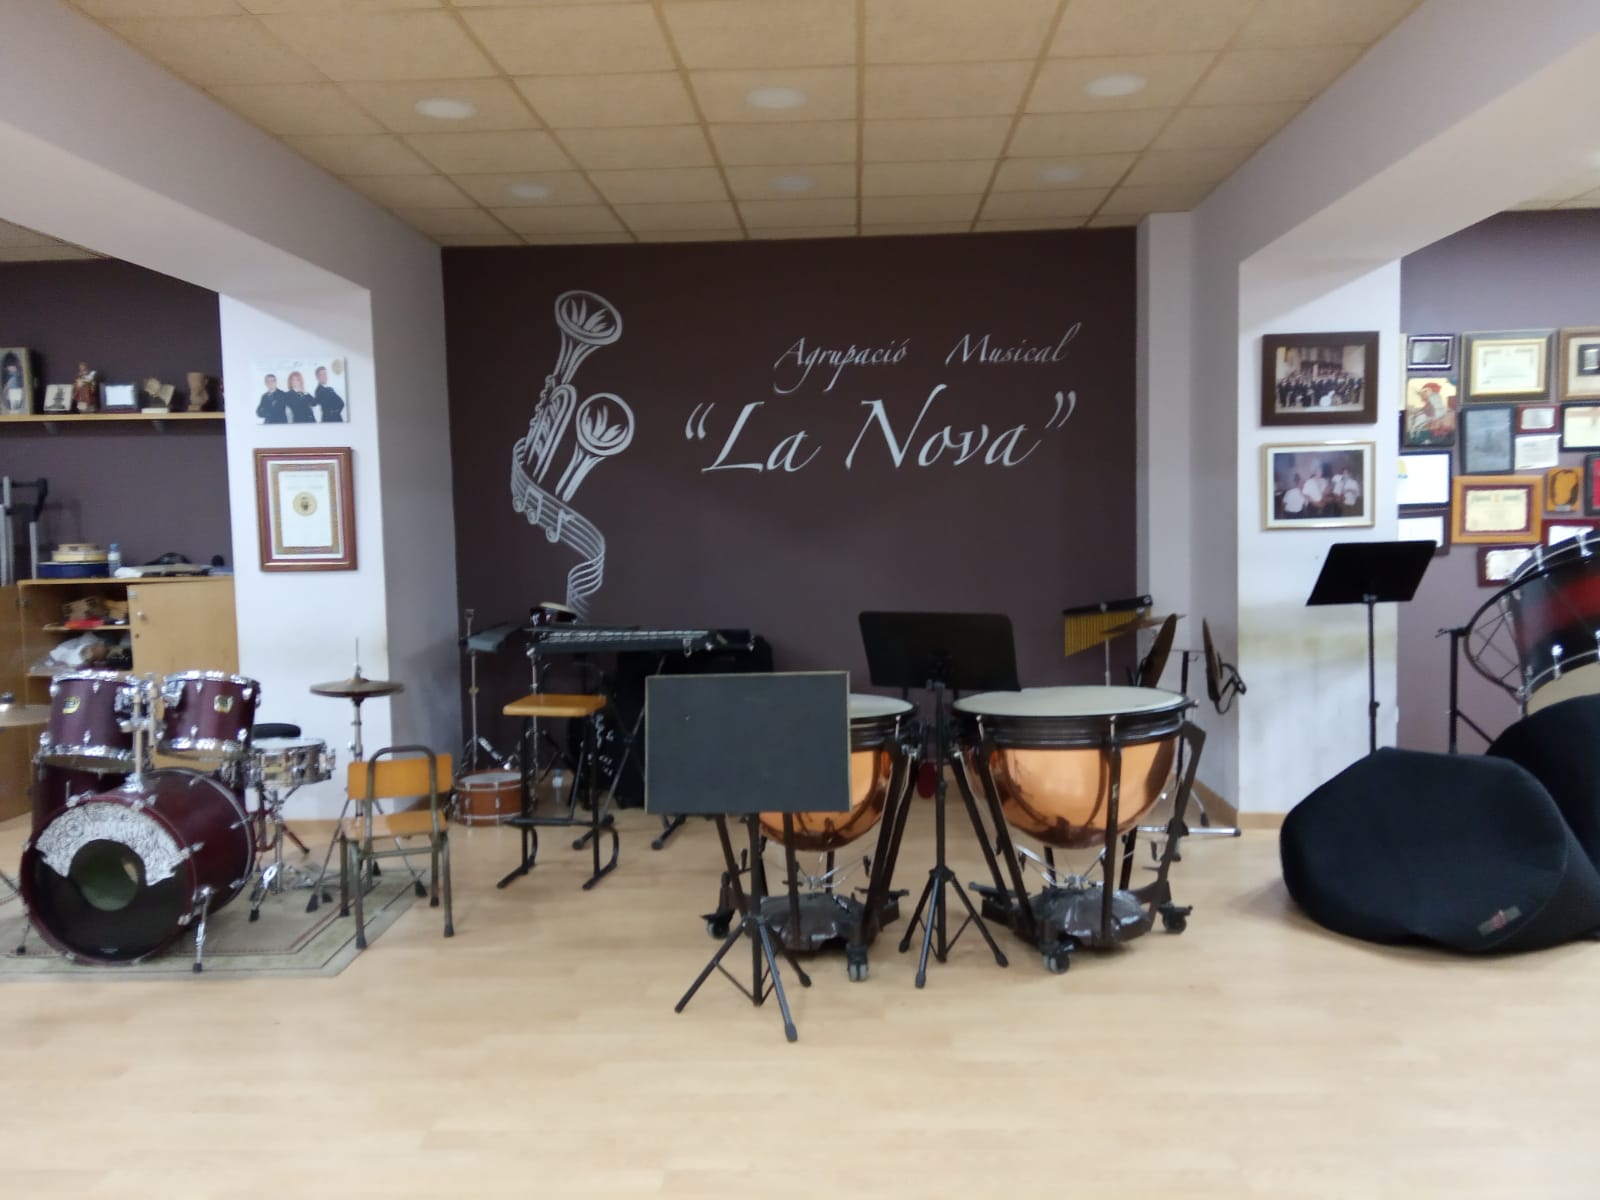 Agrupación Musical "La Nova"